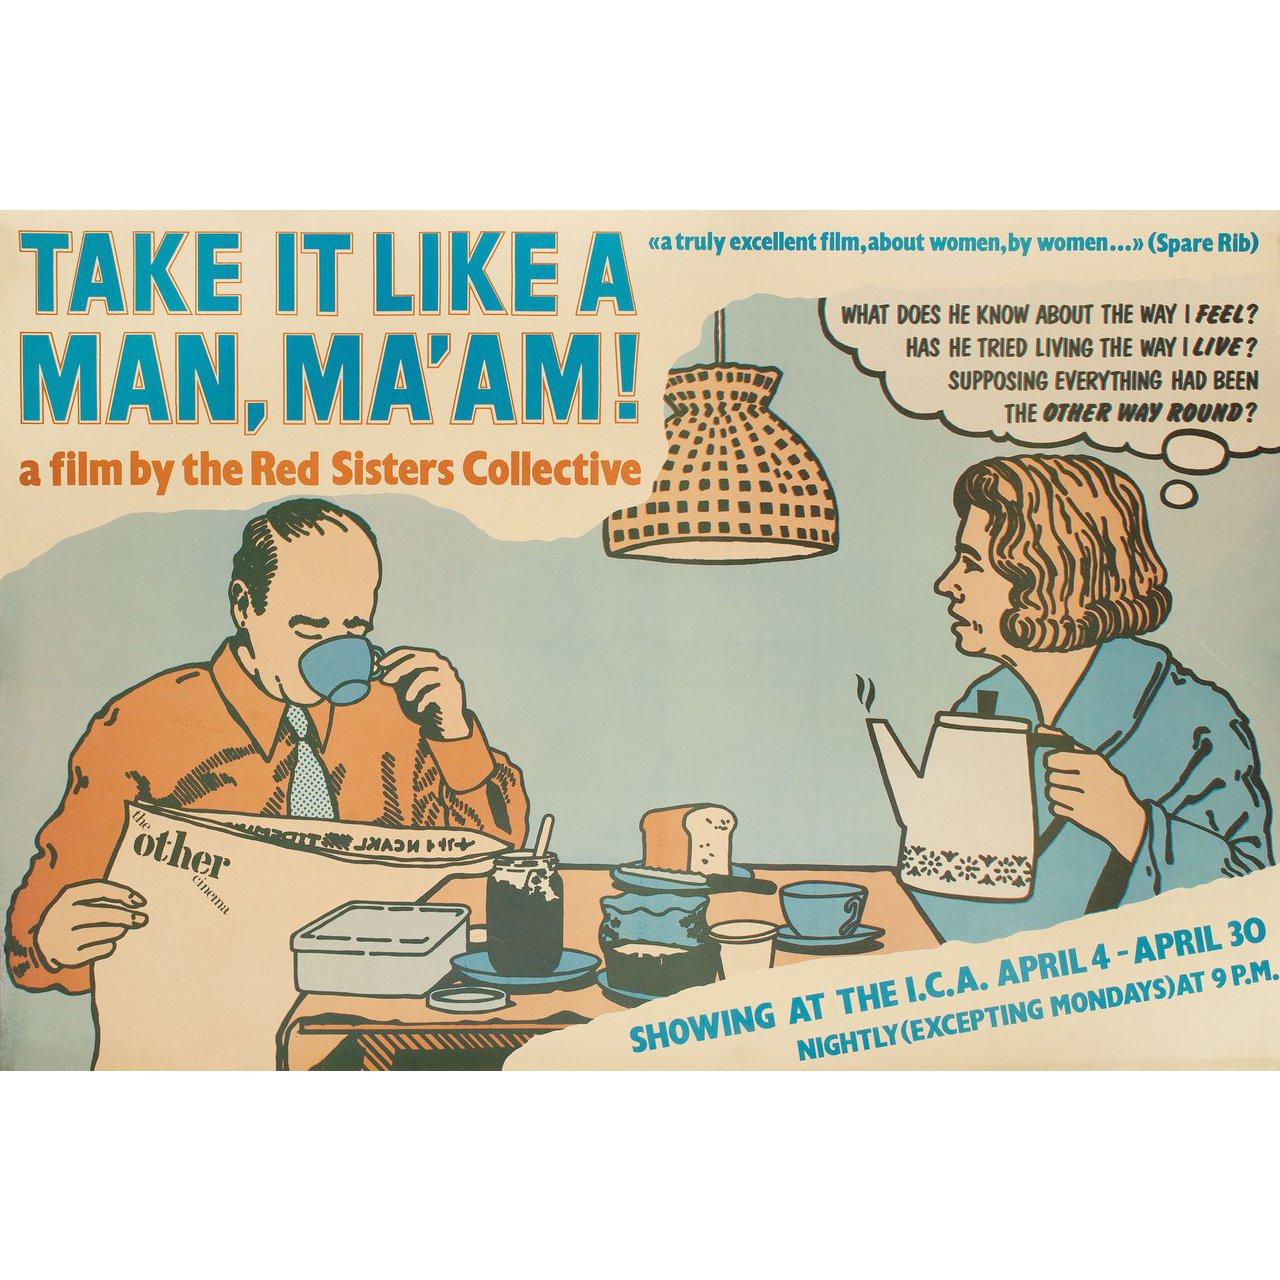 Originales britisches Doppelkronenplakat von 1975 für den Film Take It Like a Man, Ma'am! (Ta' det som en mand, frue!) Regie: Mette Knudsen / Elisabeth Rygaard / Li Vilstrup mit Tove Maes / Alf Lassen / Flemming Quist Moller / Caecilie Nordgreen.